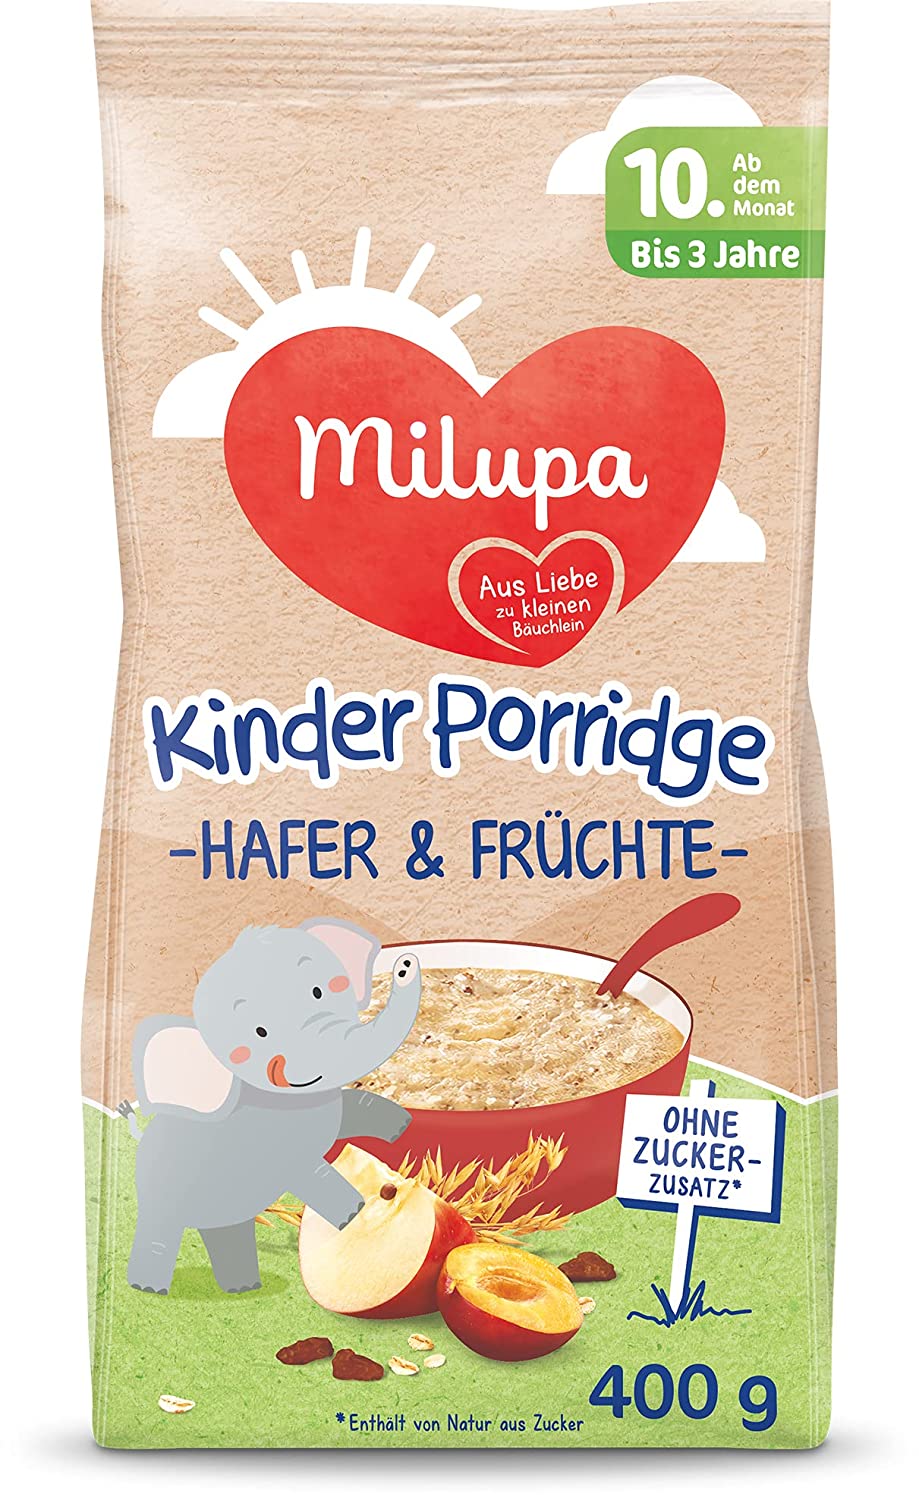 Milupa Kinder-Porridge Hafer und Früchte ab dem 10. Monat bis 3 Jahre, 400 g